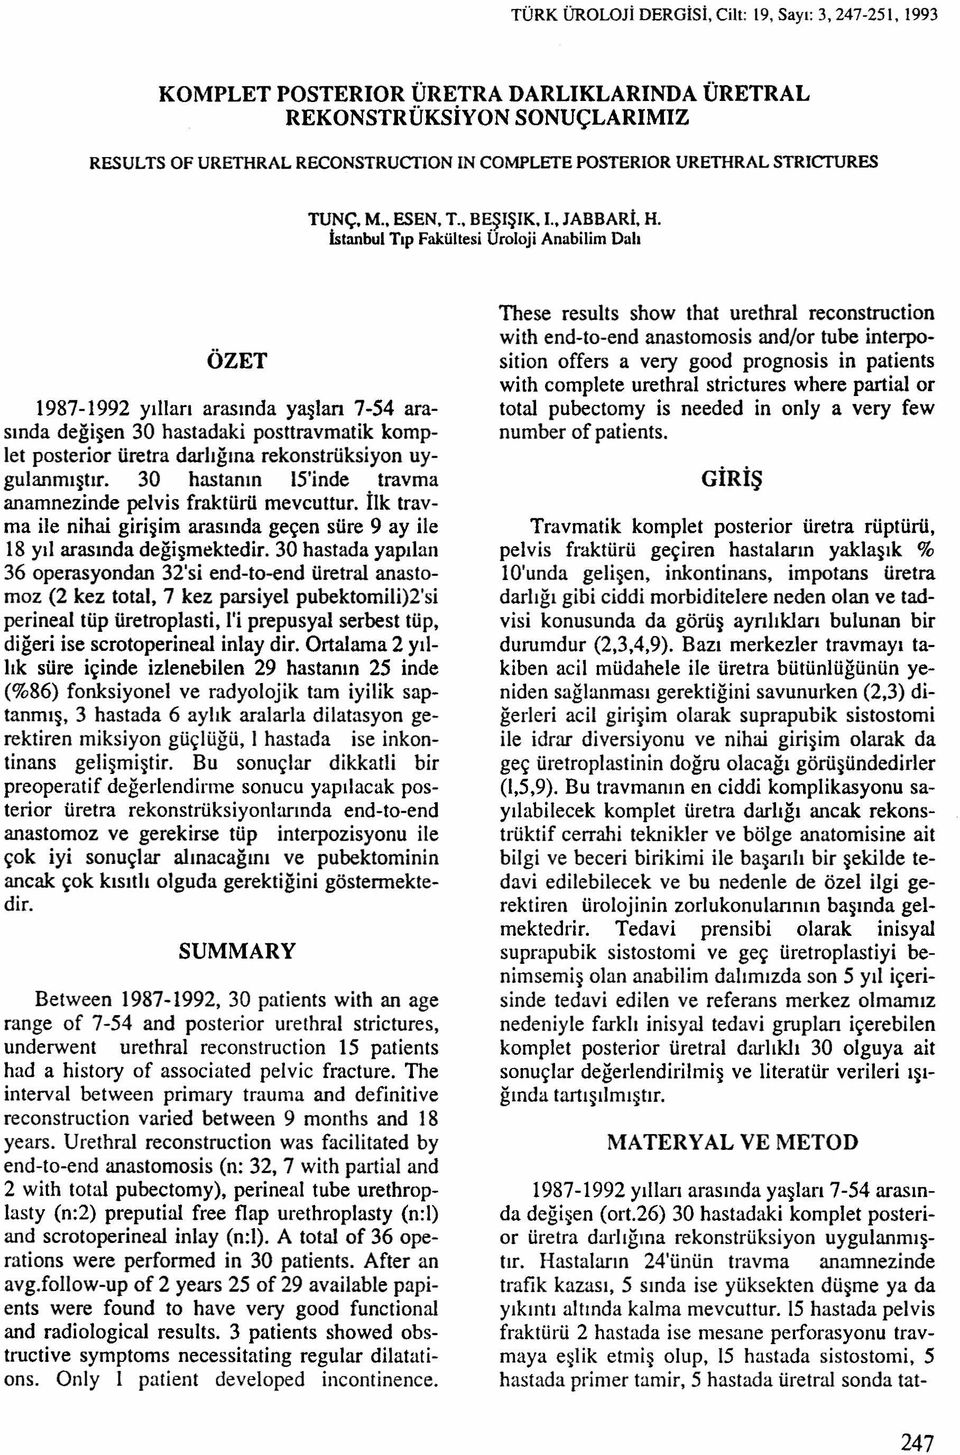 İstanbul Tıp Fakültesi Uroloji Anabilim Dalı ÖZET 1987-1992 yılları arasında yaşlan 7-54 arasında değişen 30 hastadaki posttravmatik kornplet posterior üretra darlığına rekonstrüksiyon uygulanmıştır.